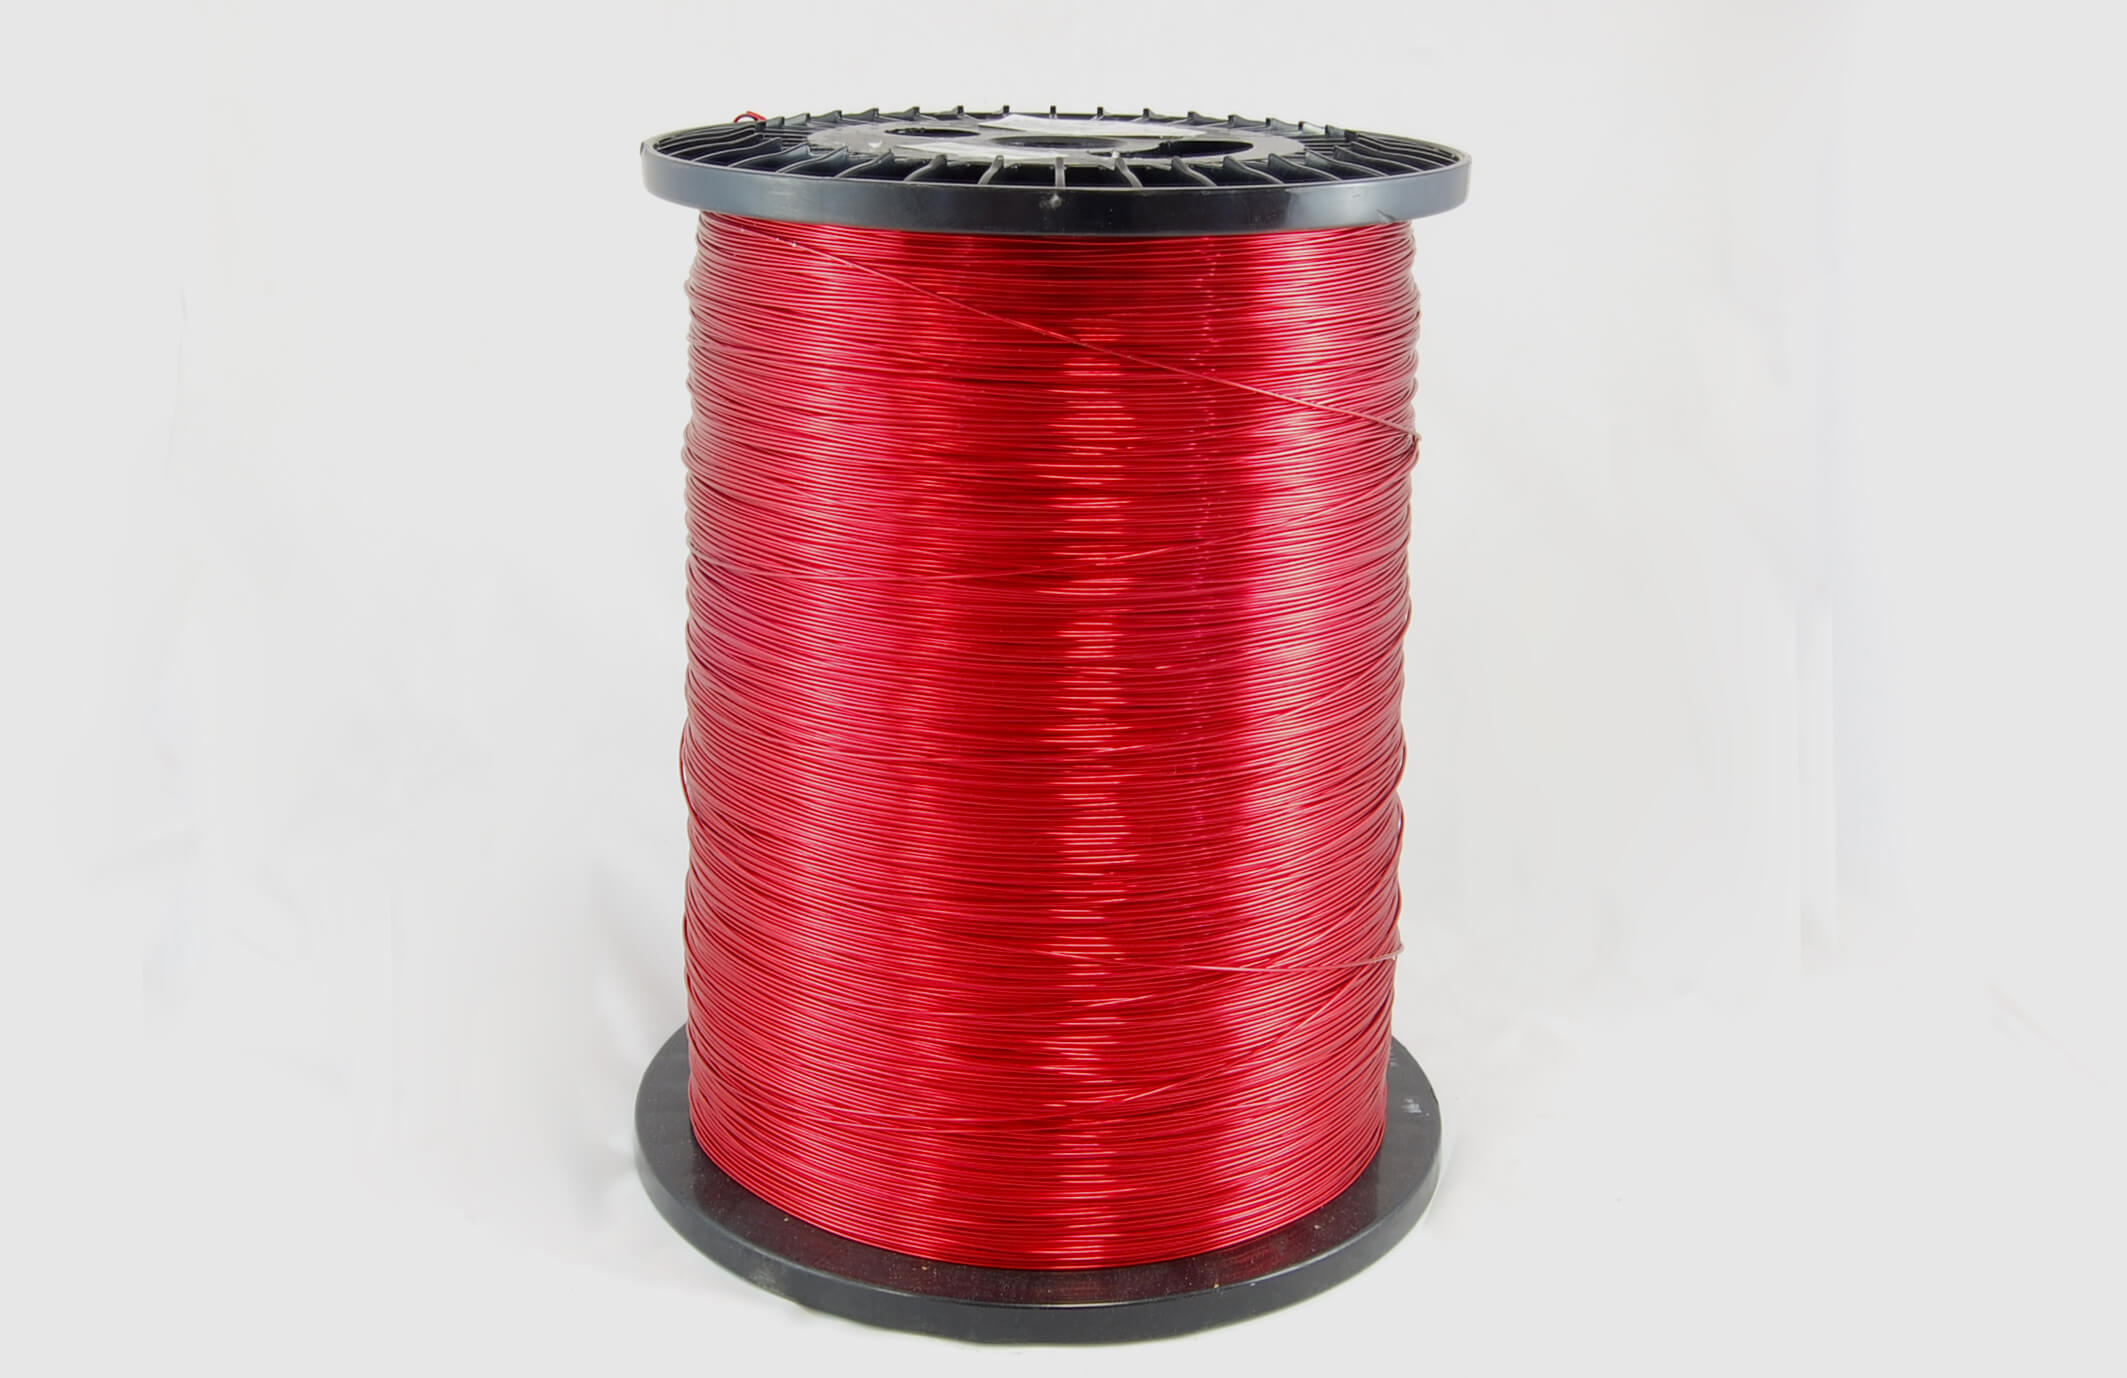 #35 Heavy Nysol  Round HNSR MW 80 Copper Magnet Wire 155°C, red, 85 LB box (average wght.)